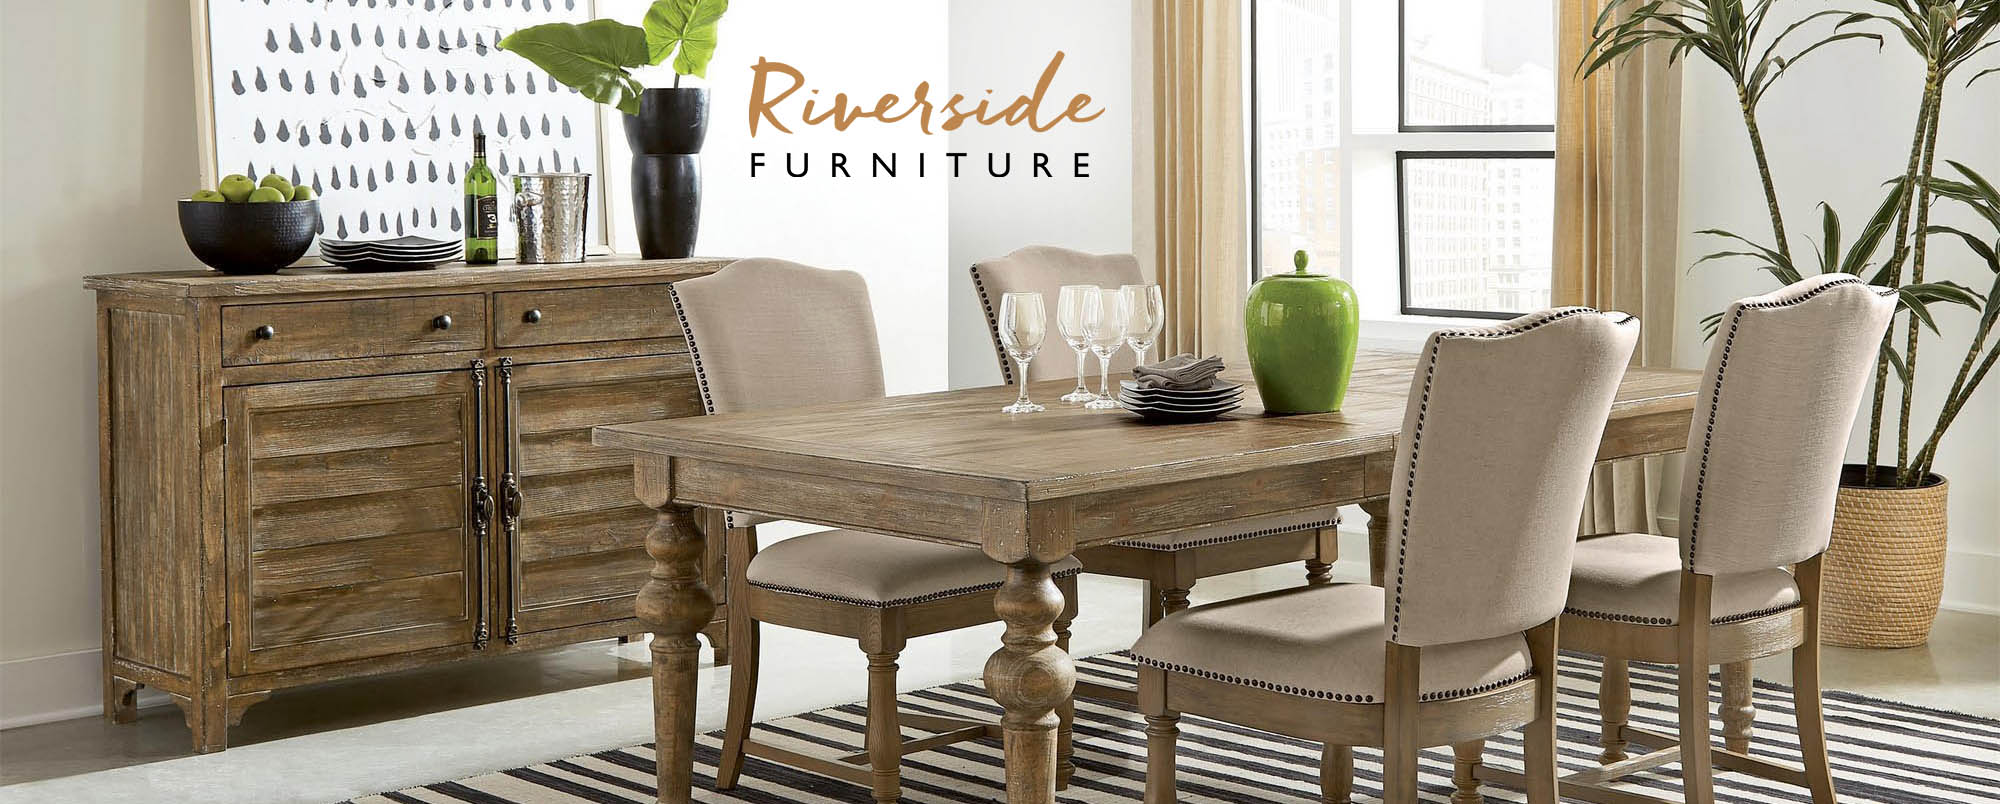 Shop Riverside Furniture at Homethreads